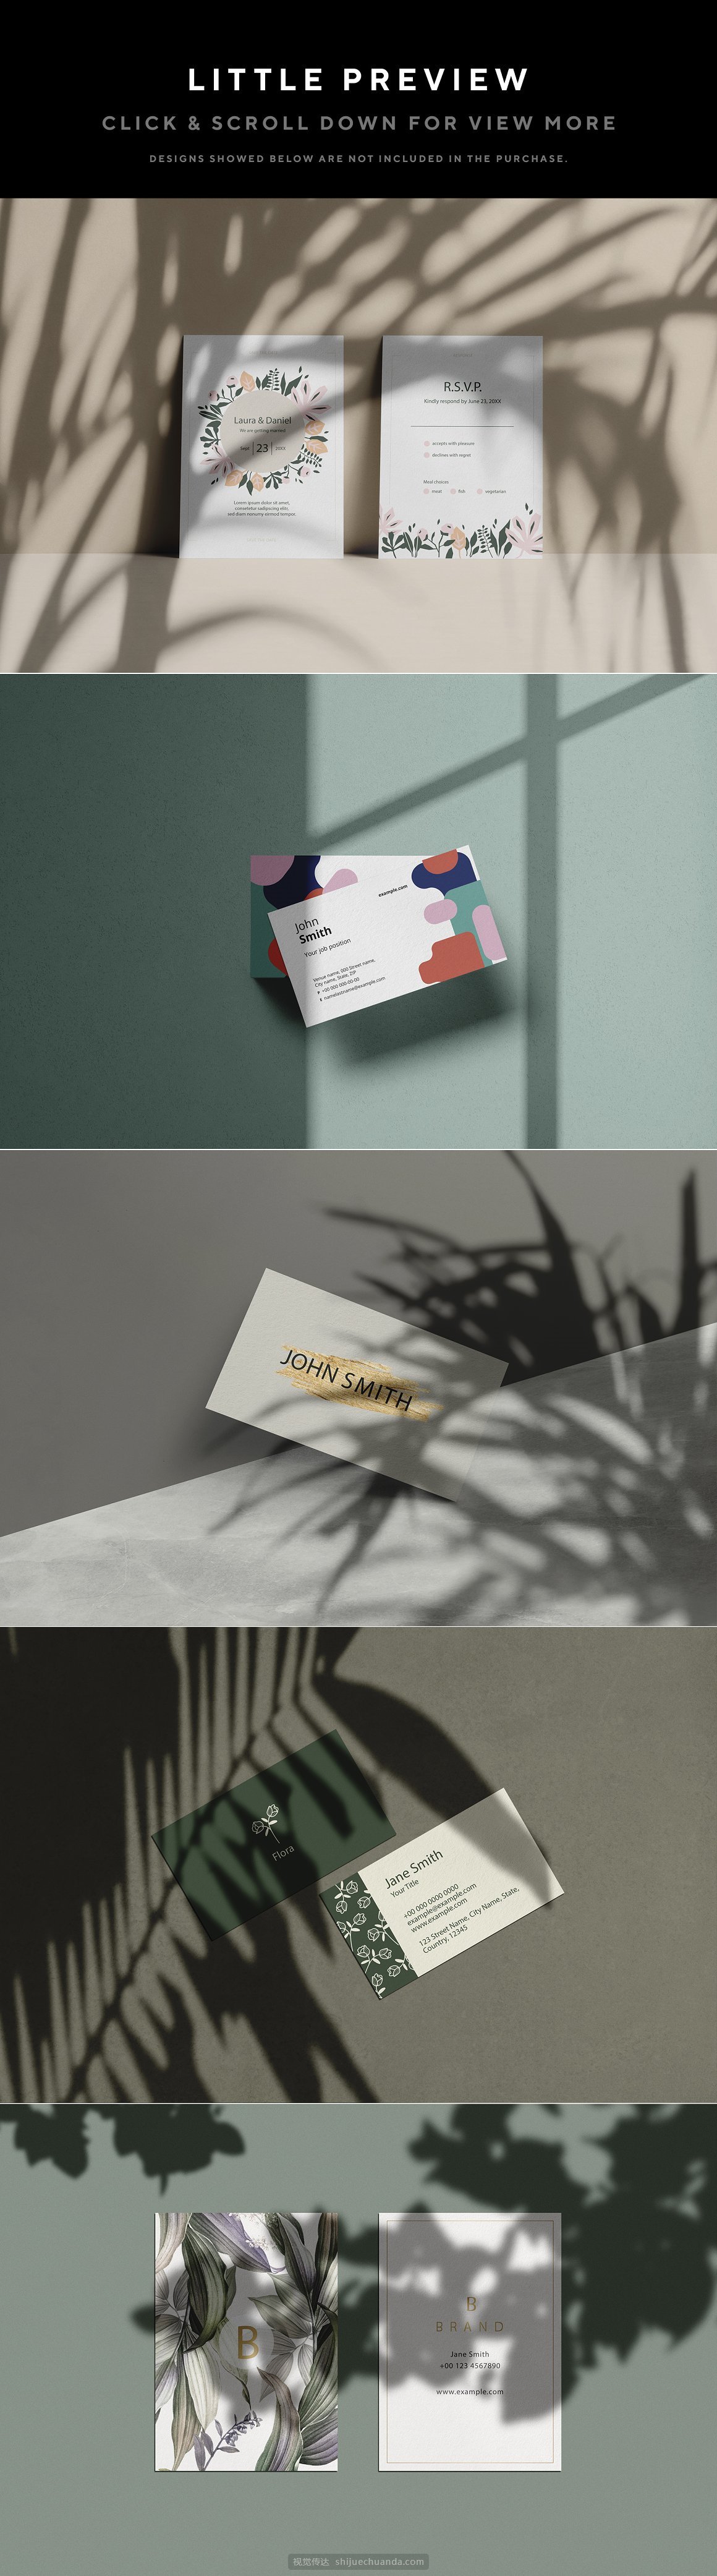 自然阳光植物光影品牌设计提案样机PSD模板